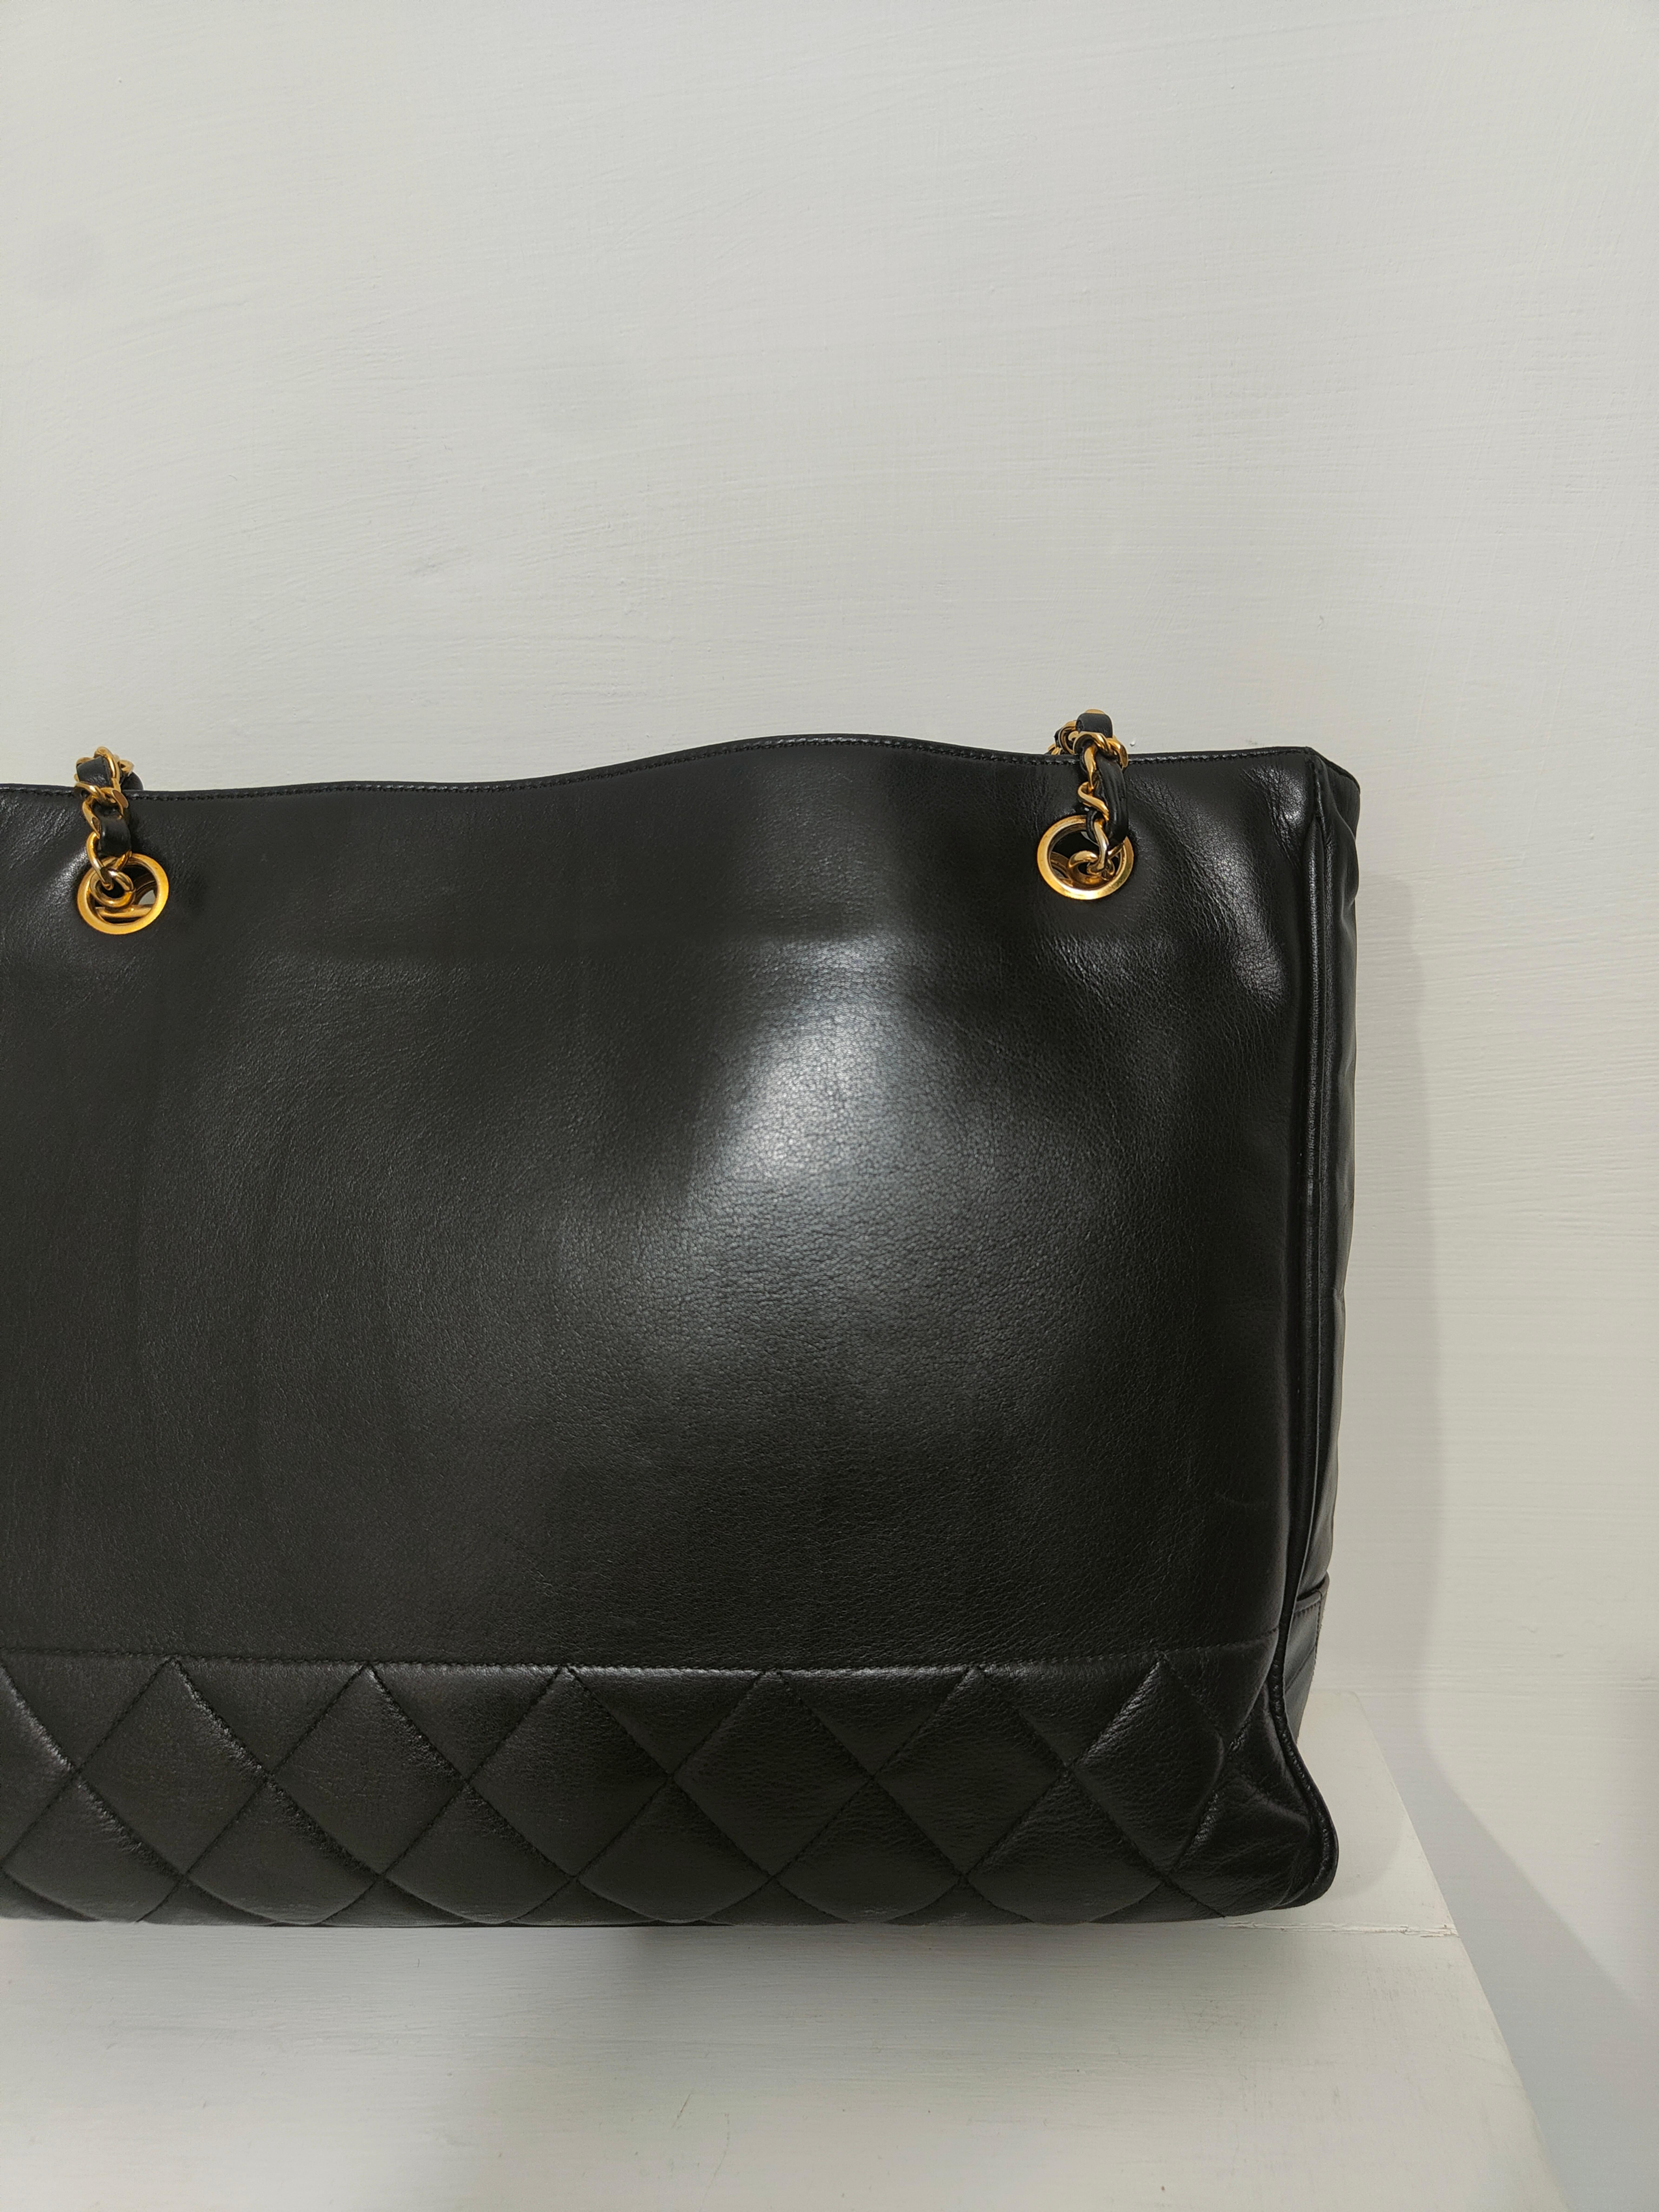 1990s Chanel black leather gold hardware shoulder bag  For Sale 1